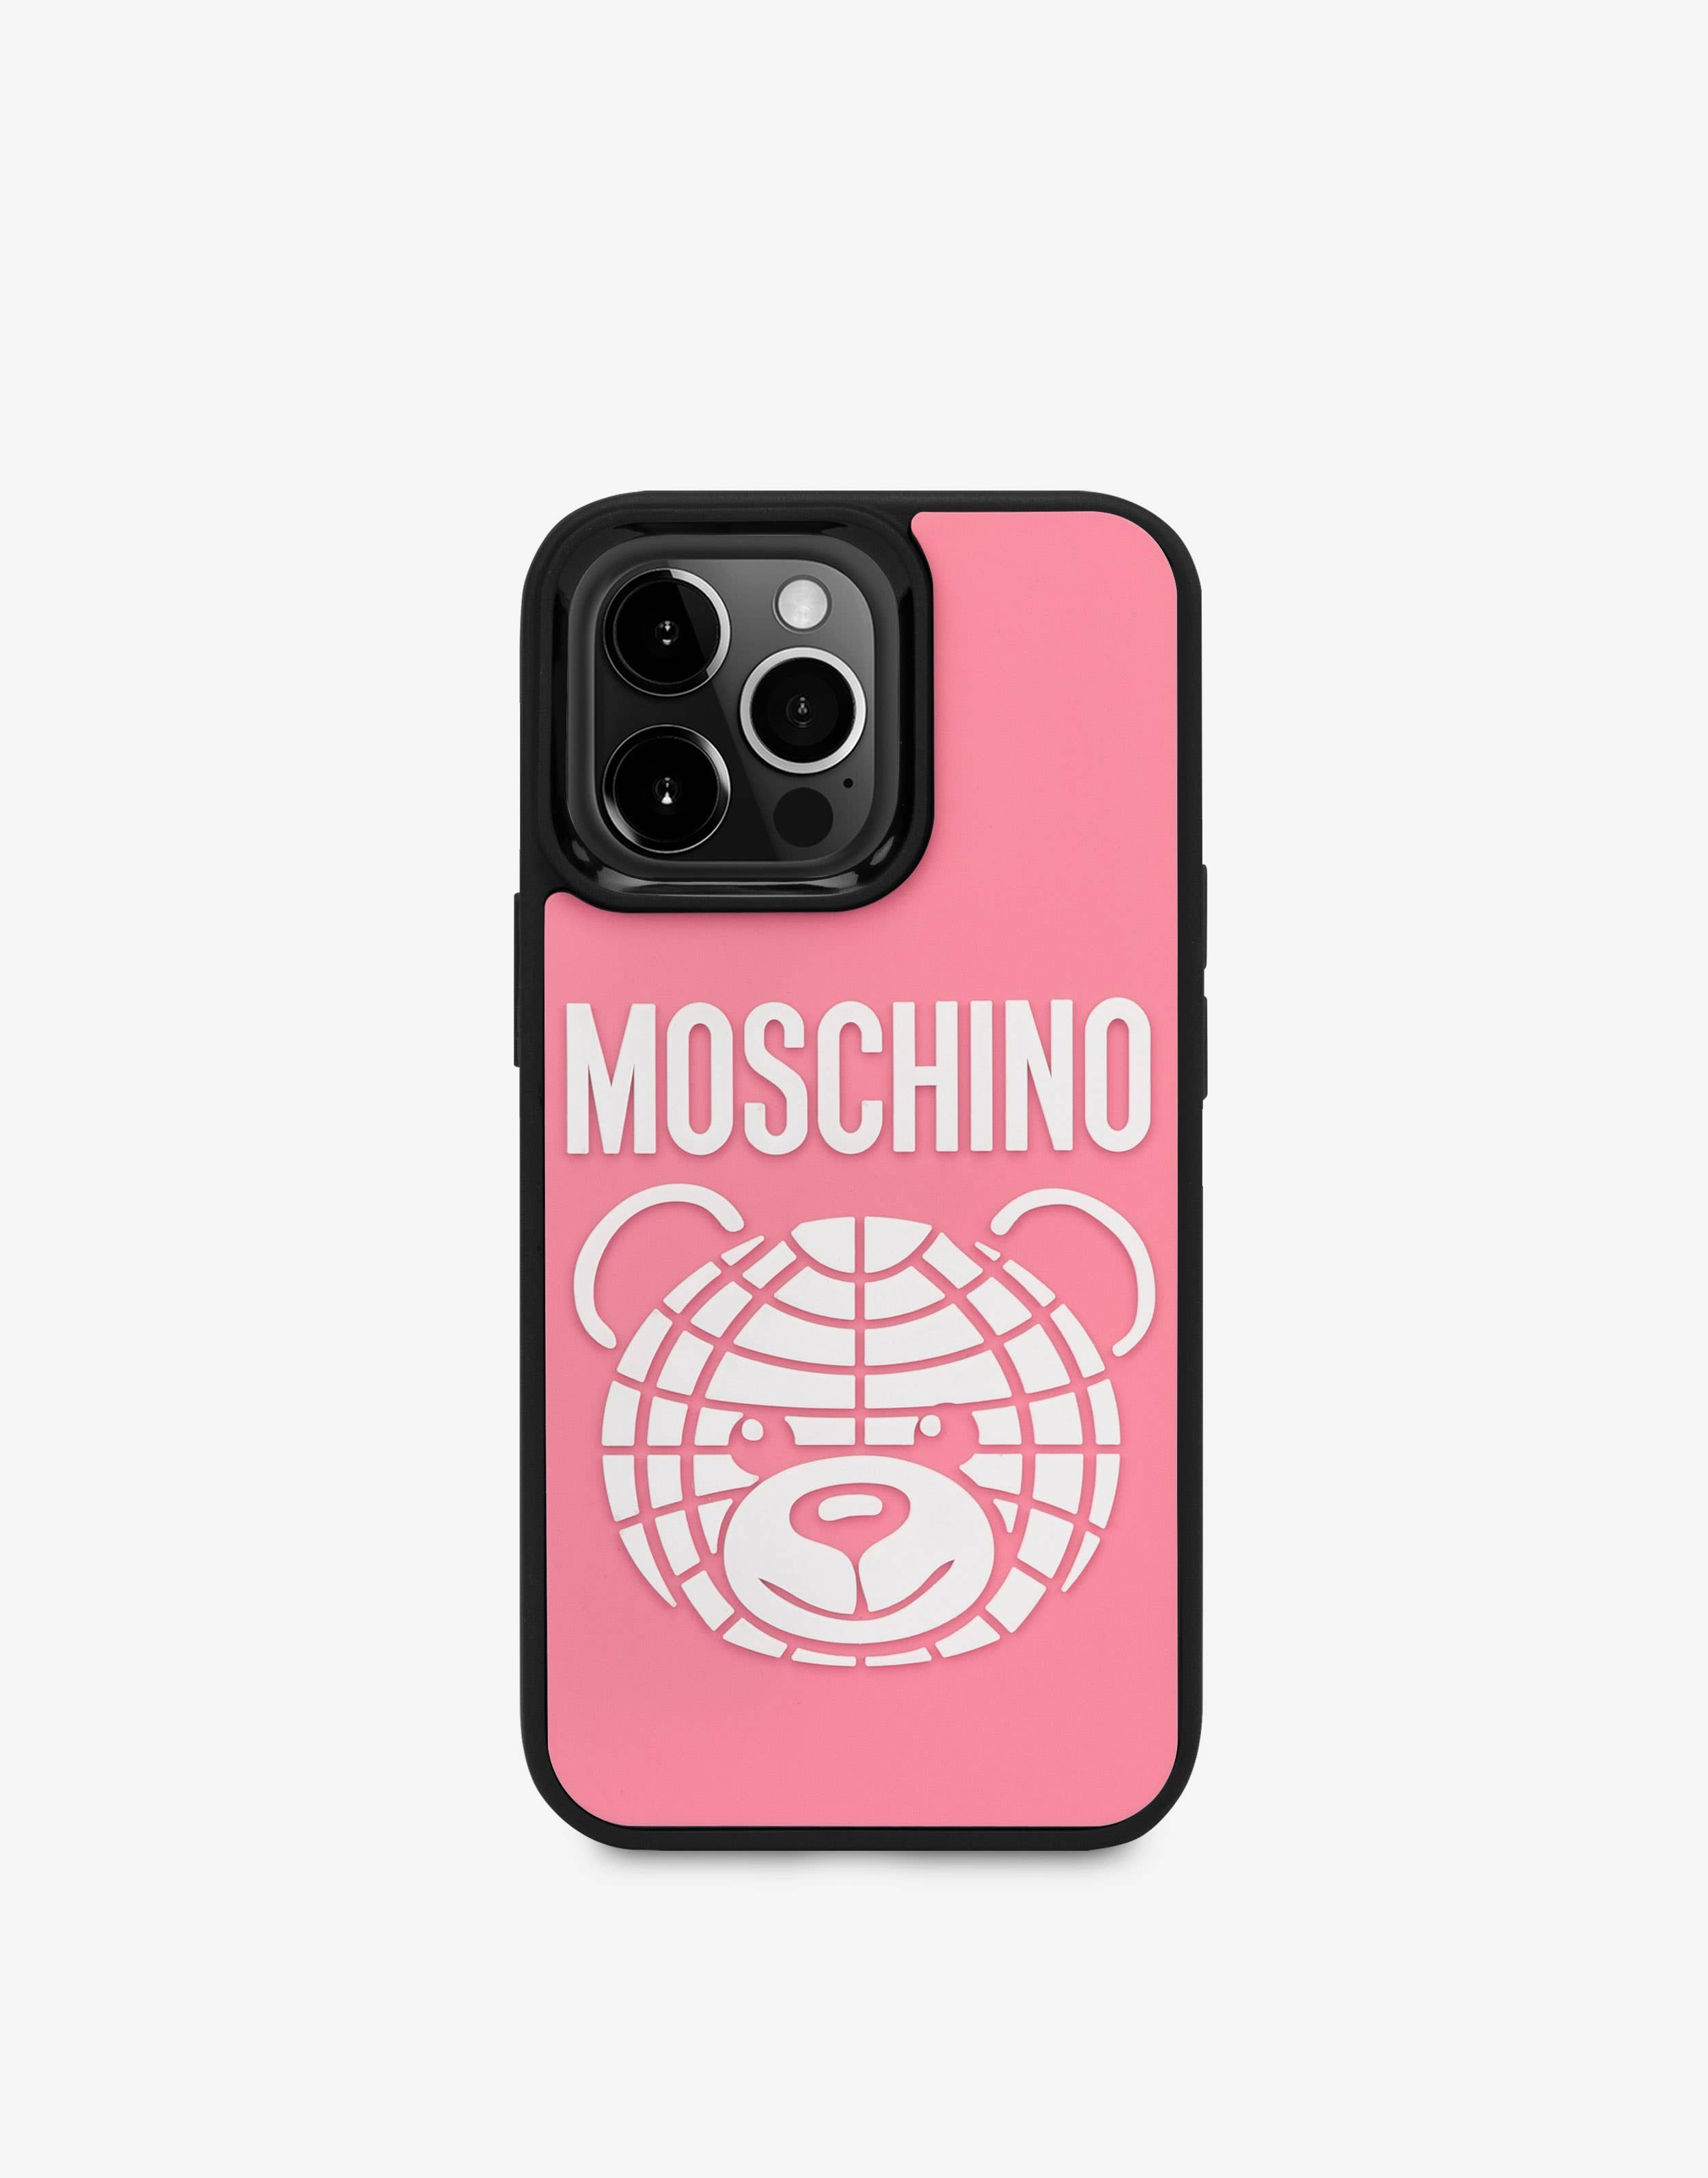 Moschino iPhone - Airpods アクセサリー - レディース アクセサリー 